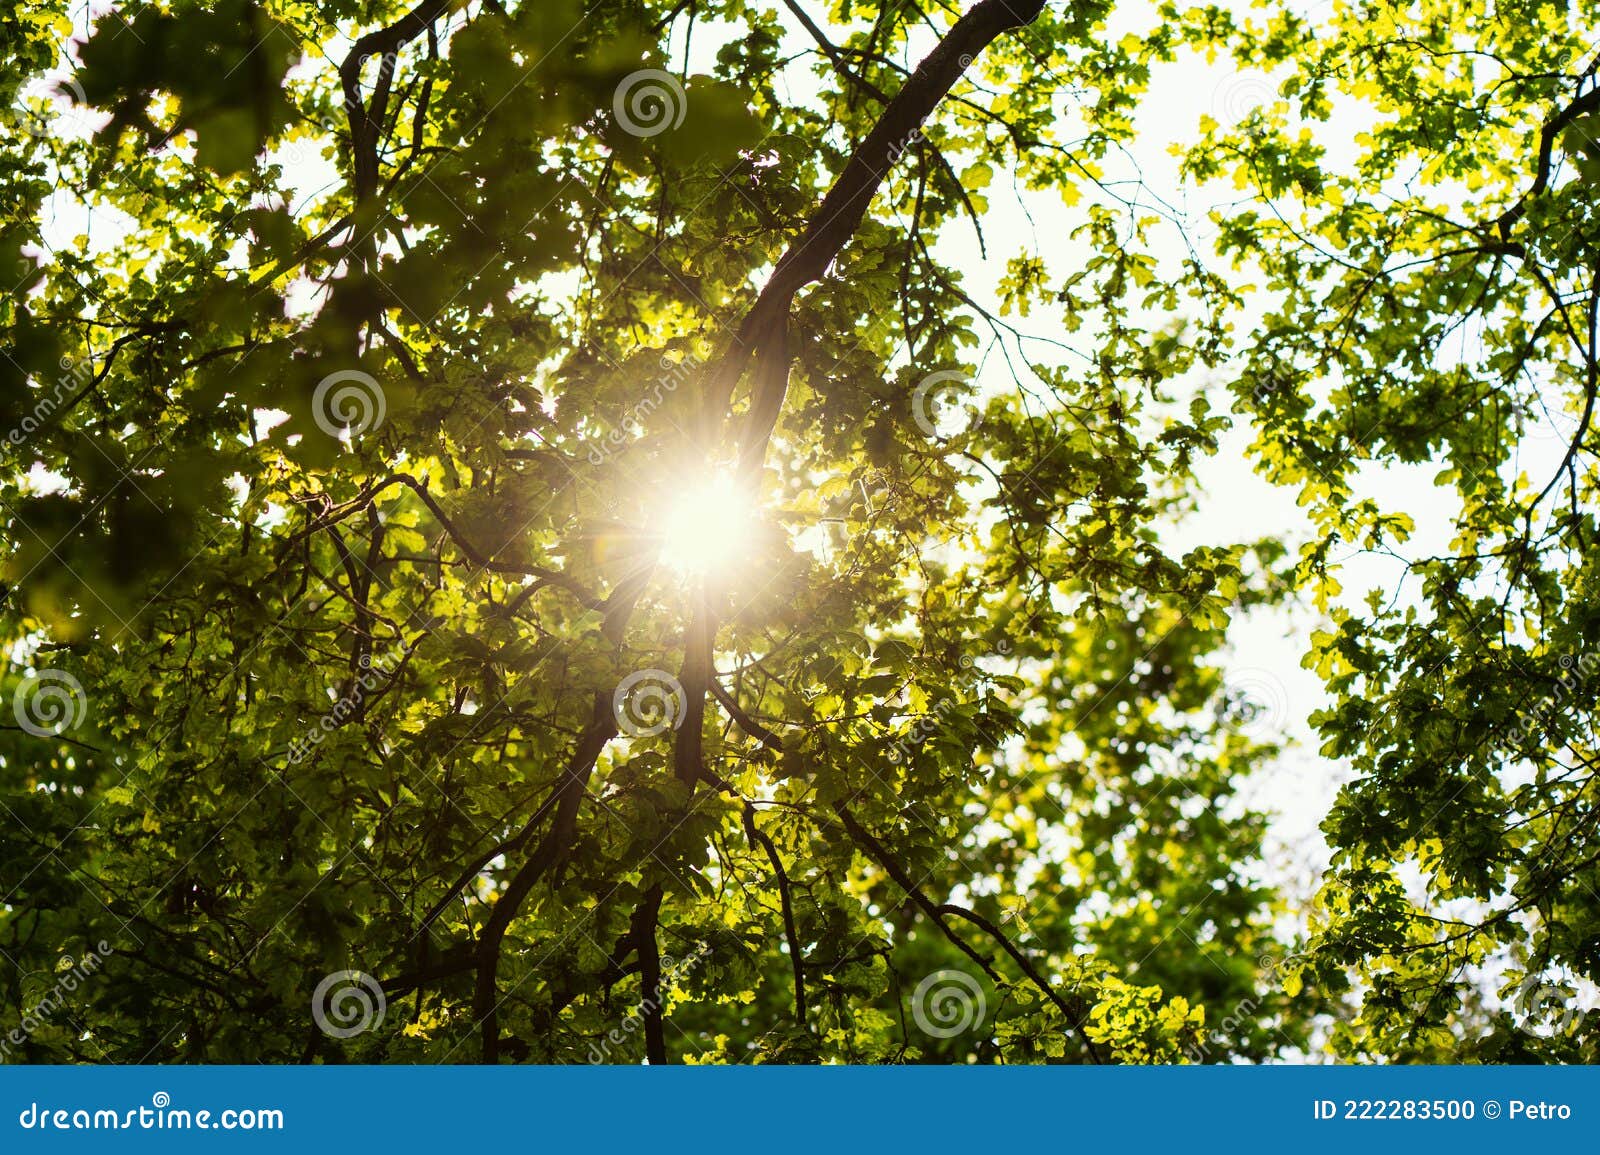 在绿色宽树下查看. 阳光穿透了叶子